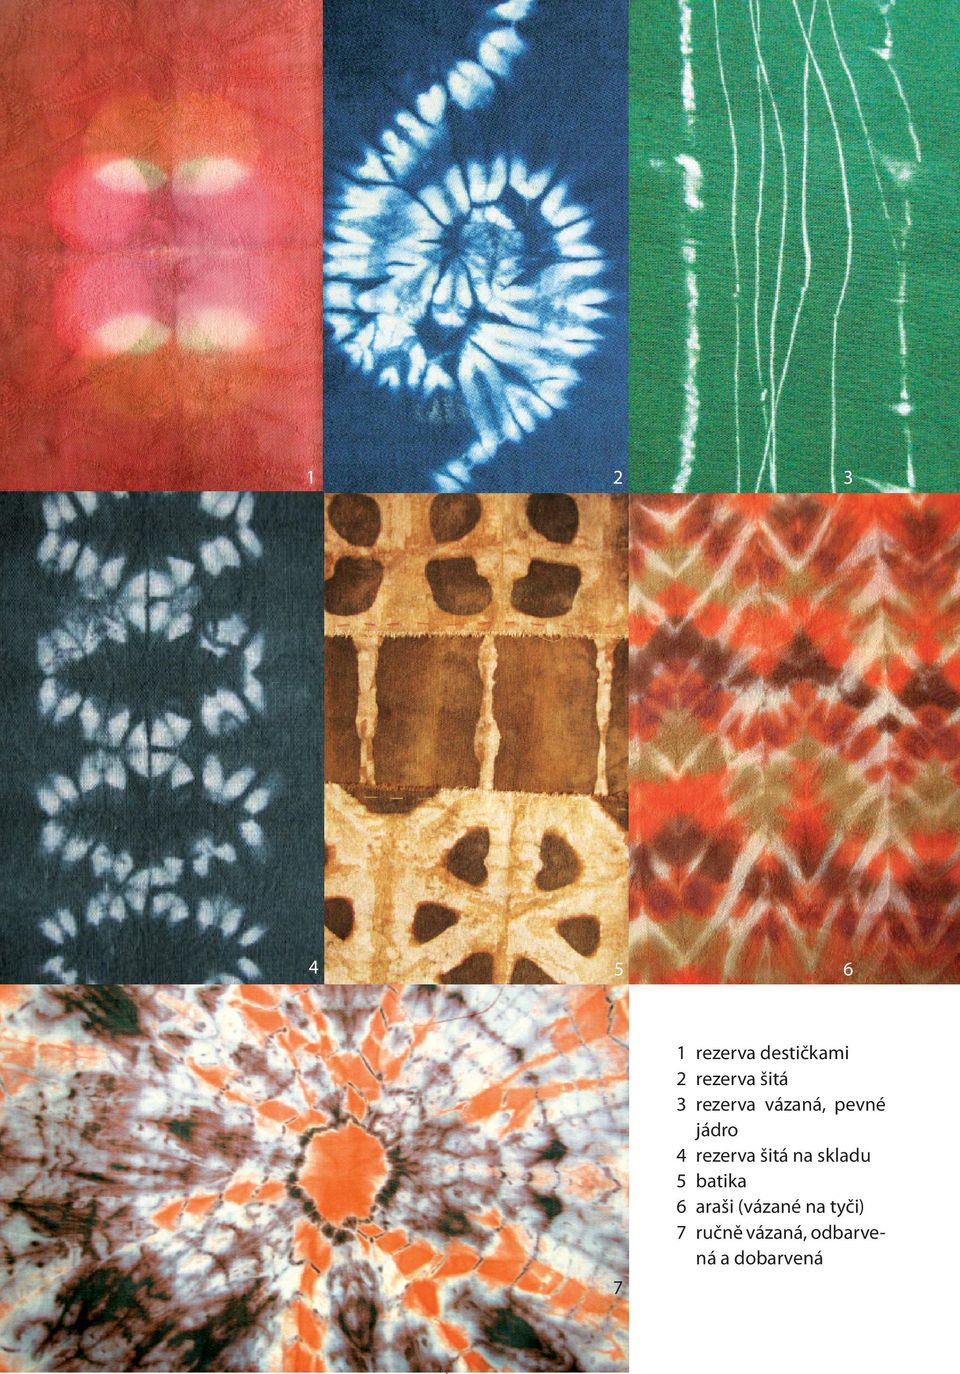 šitá na skladu 5 batika 6 araši (vázané na